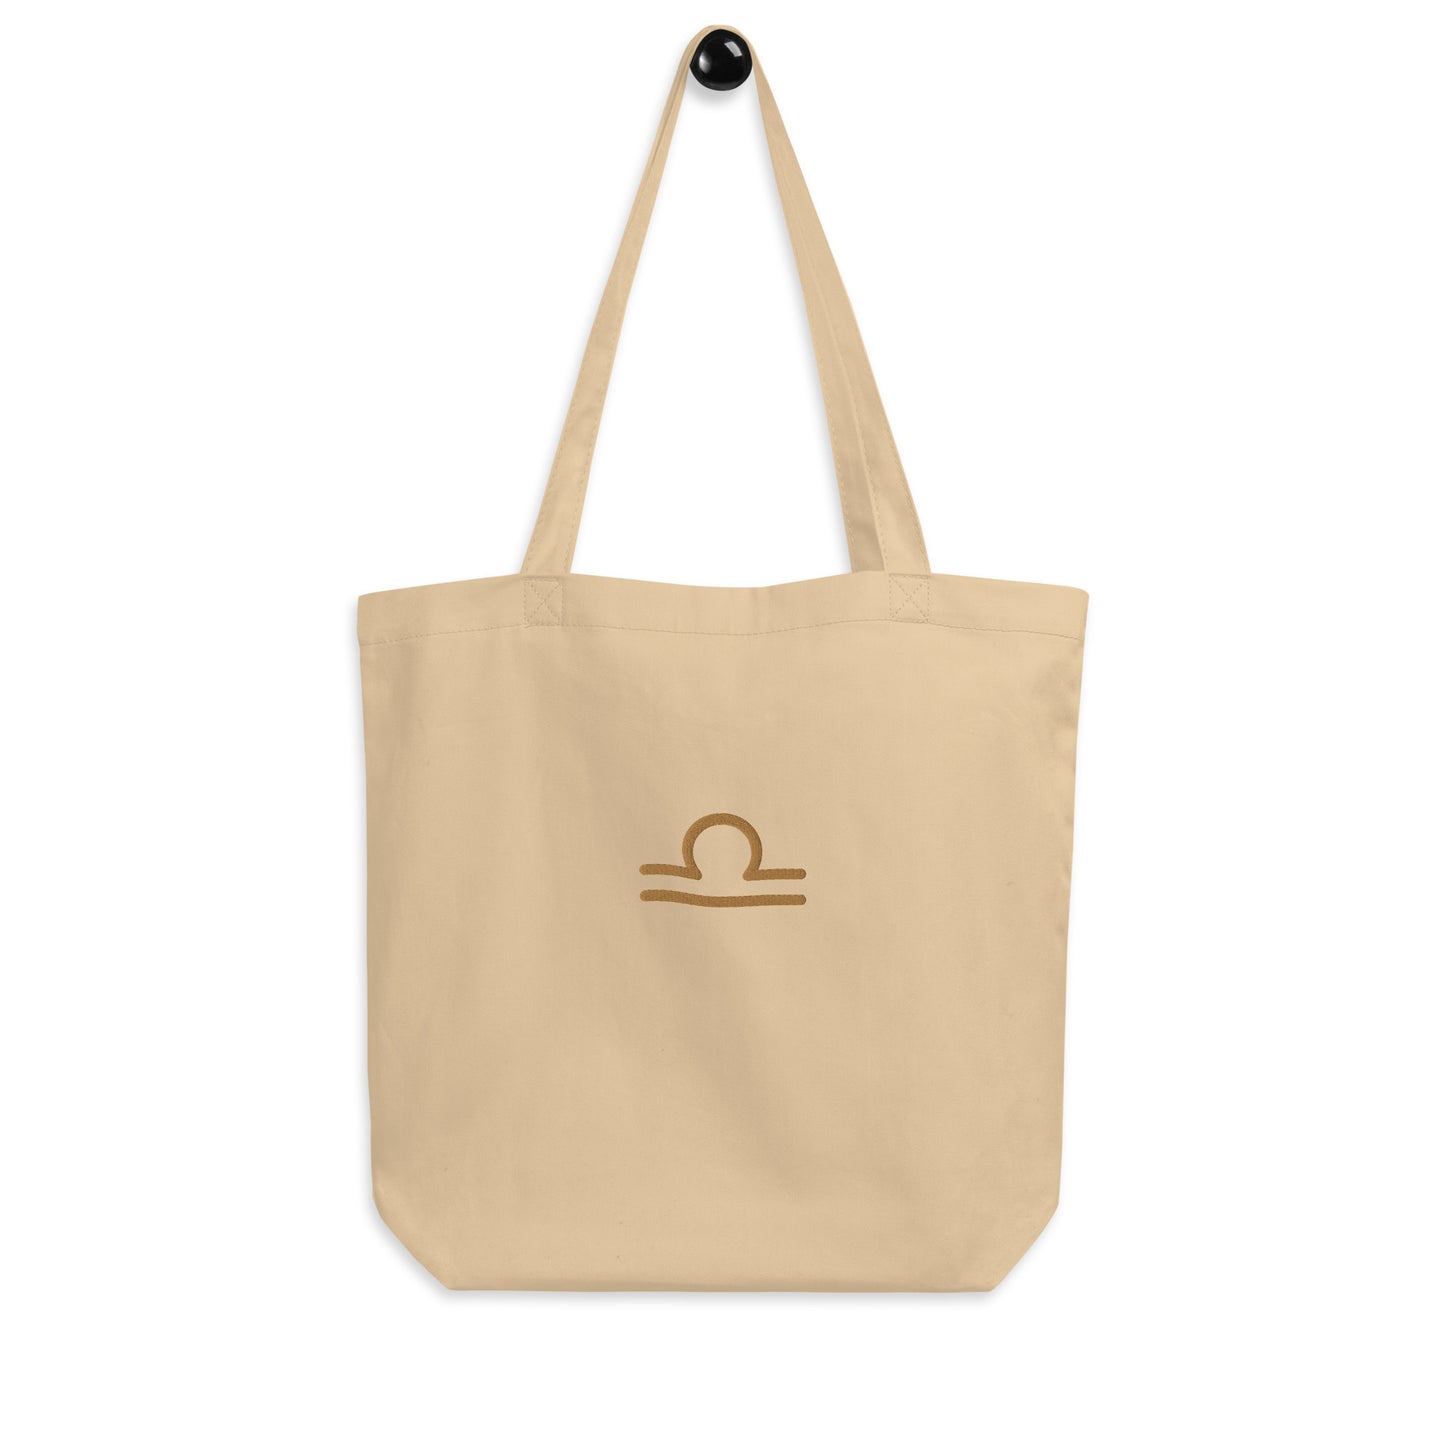 Libra - Small Open Tote Bag - Gold Thread